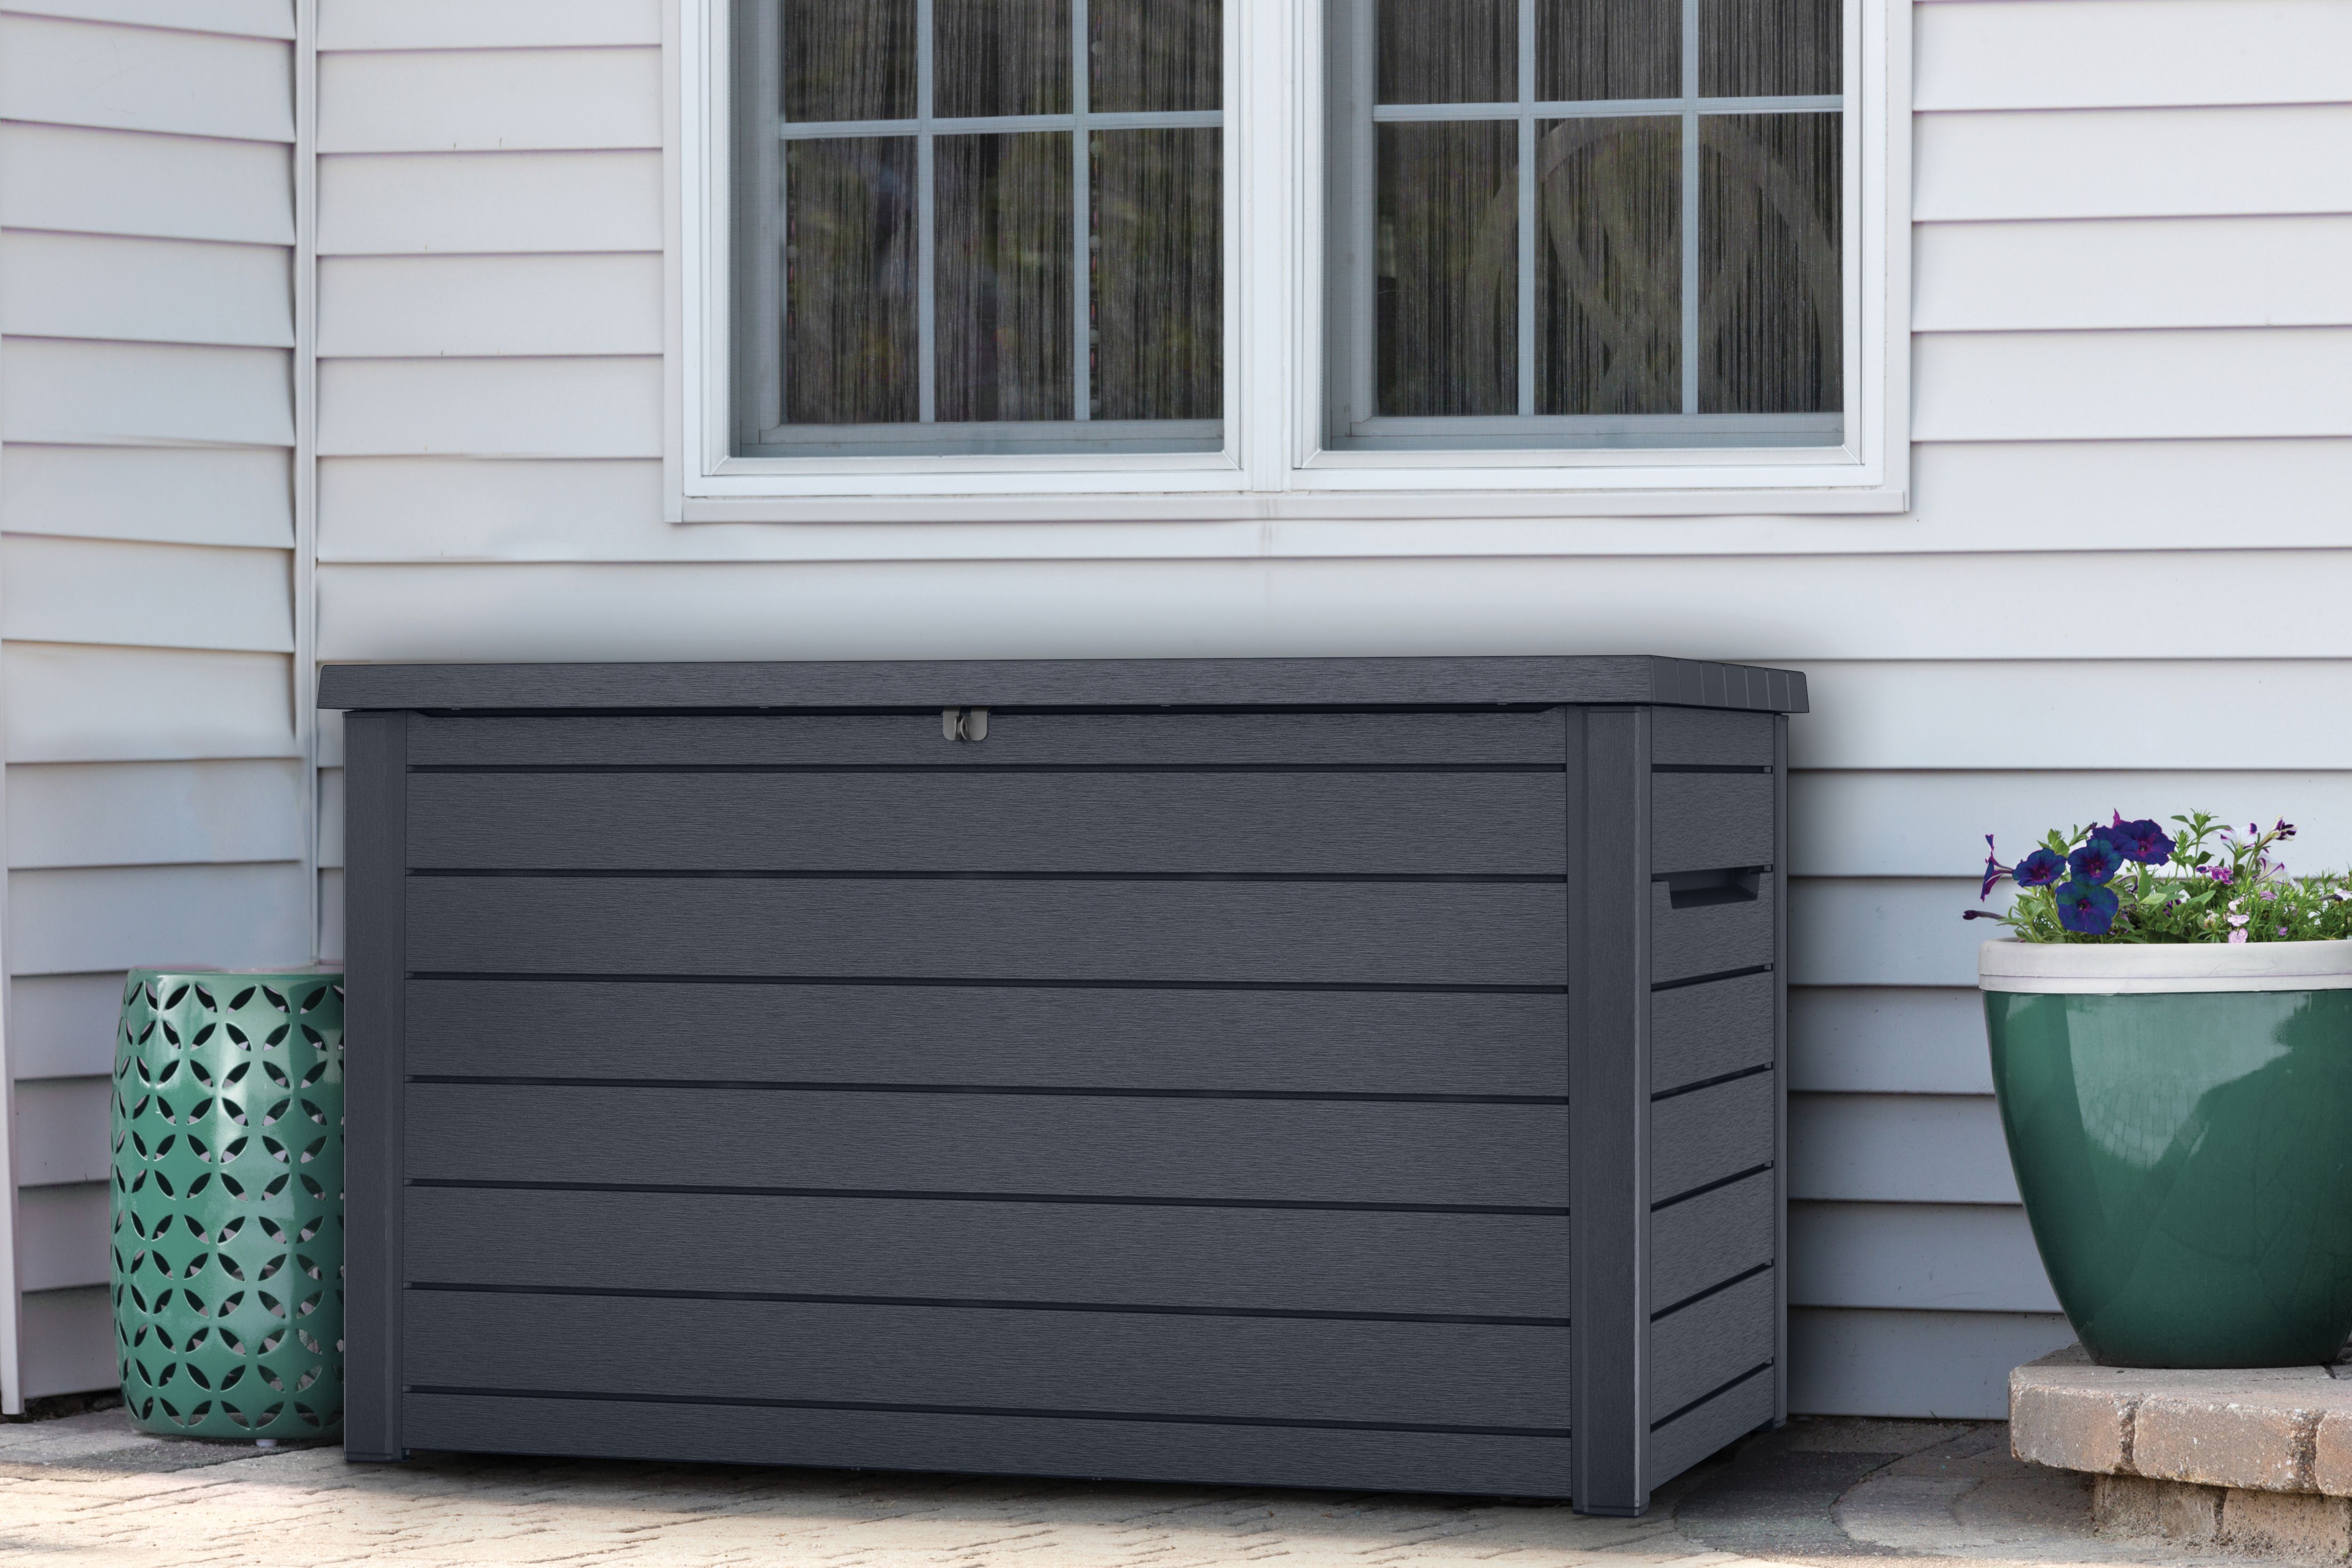 Keter Ontario 870L Outdoor Garden Storage Box - Graphite